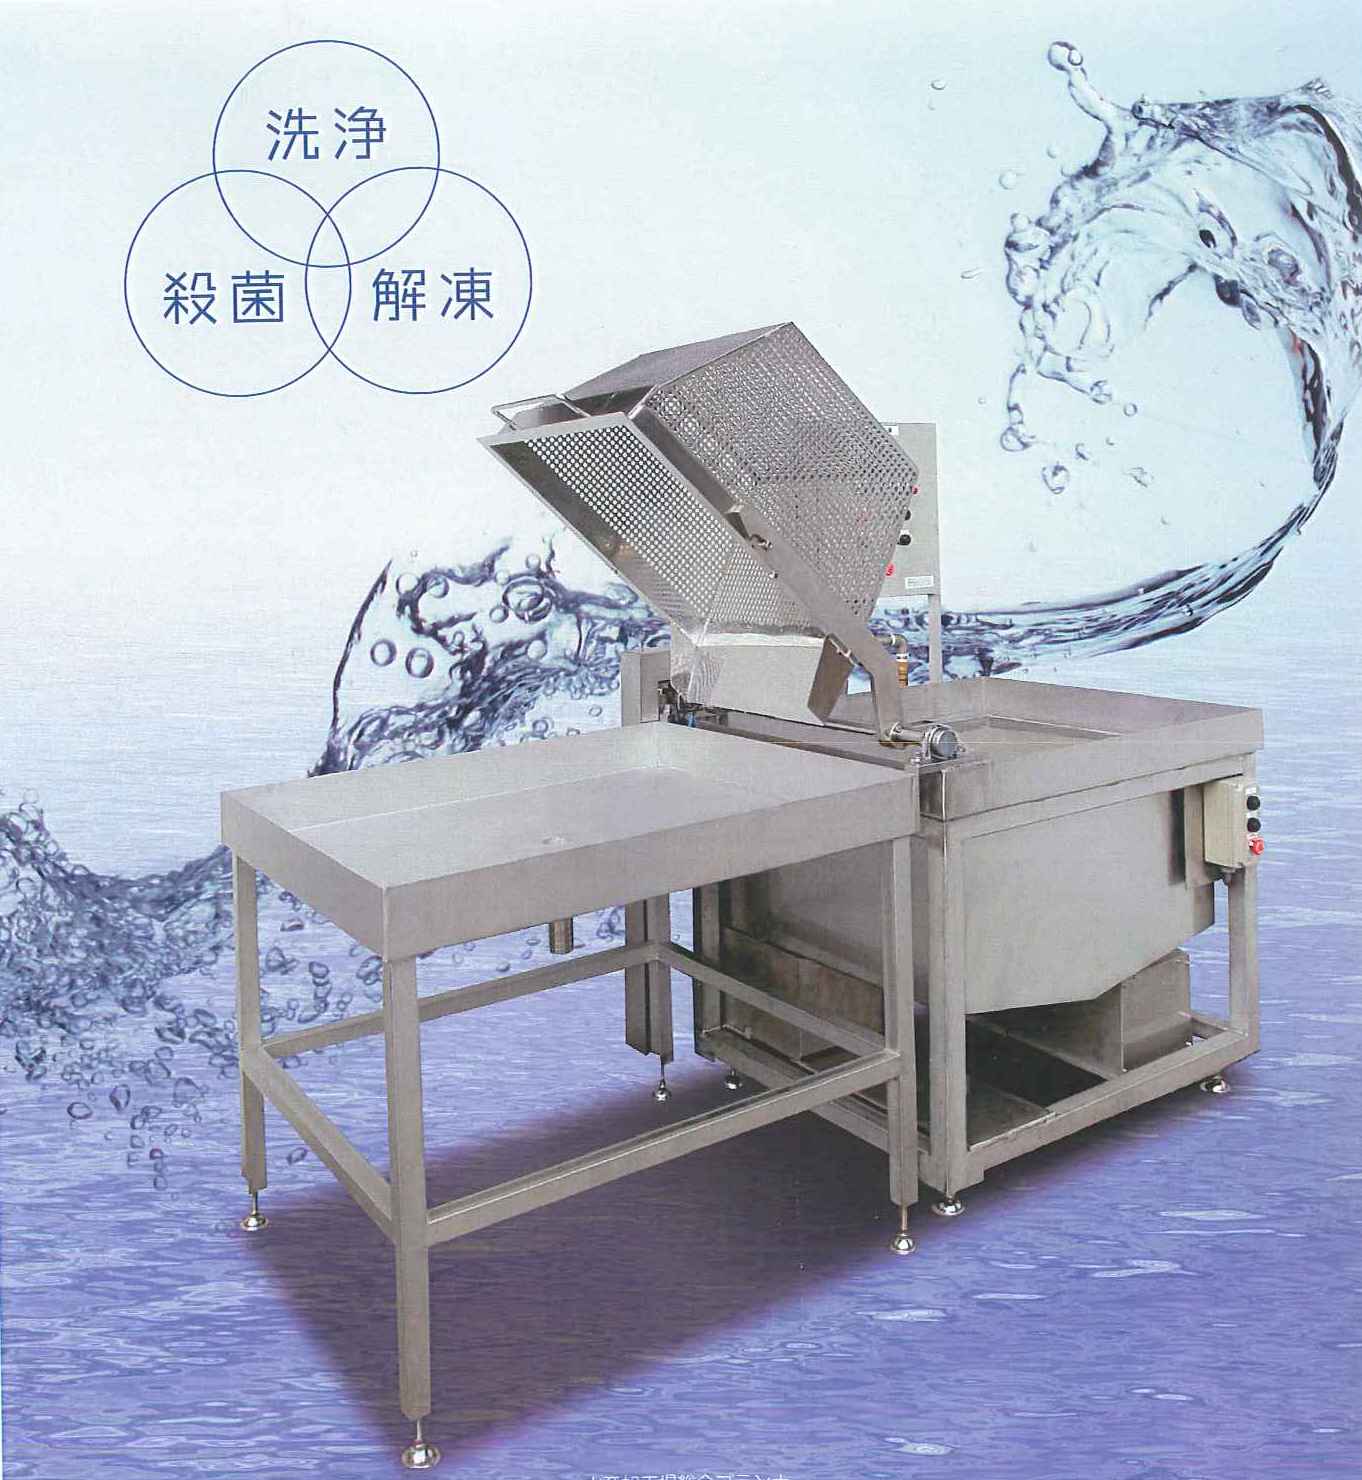 自動反転解凍洗浄装置 KS-40 Series⑰